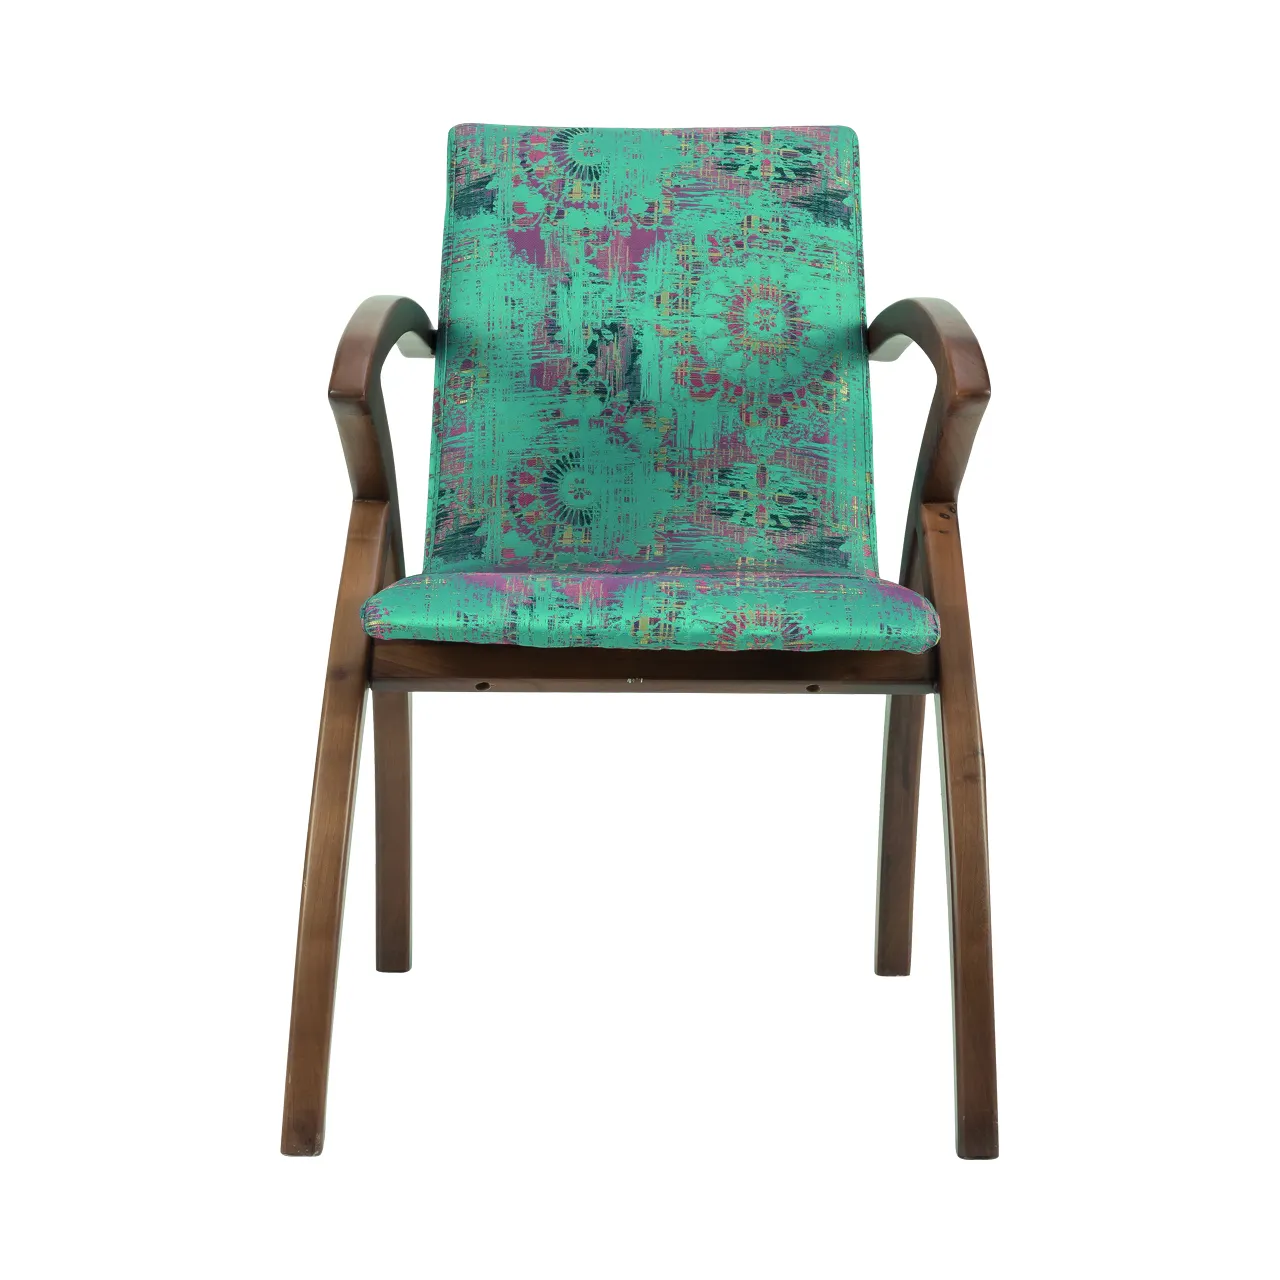 Yemek sandalyesi PERLA sandalye setleri üreticiden meşe ahşap mobilya zarif ve açık kahverengi Trendy tasarımları ile benzersiz sandalyeler